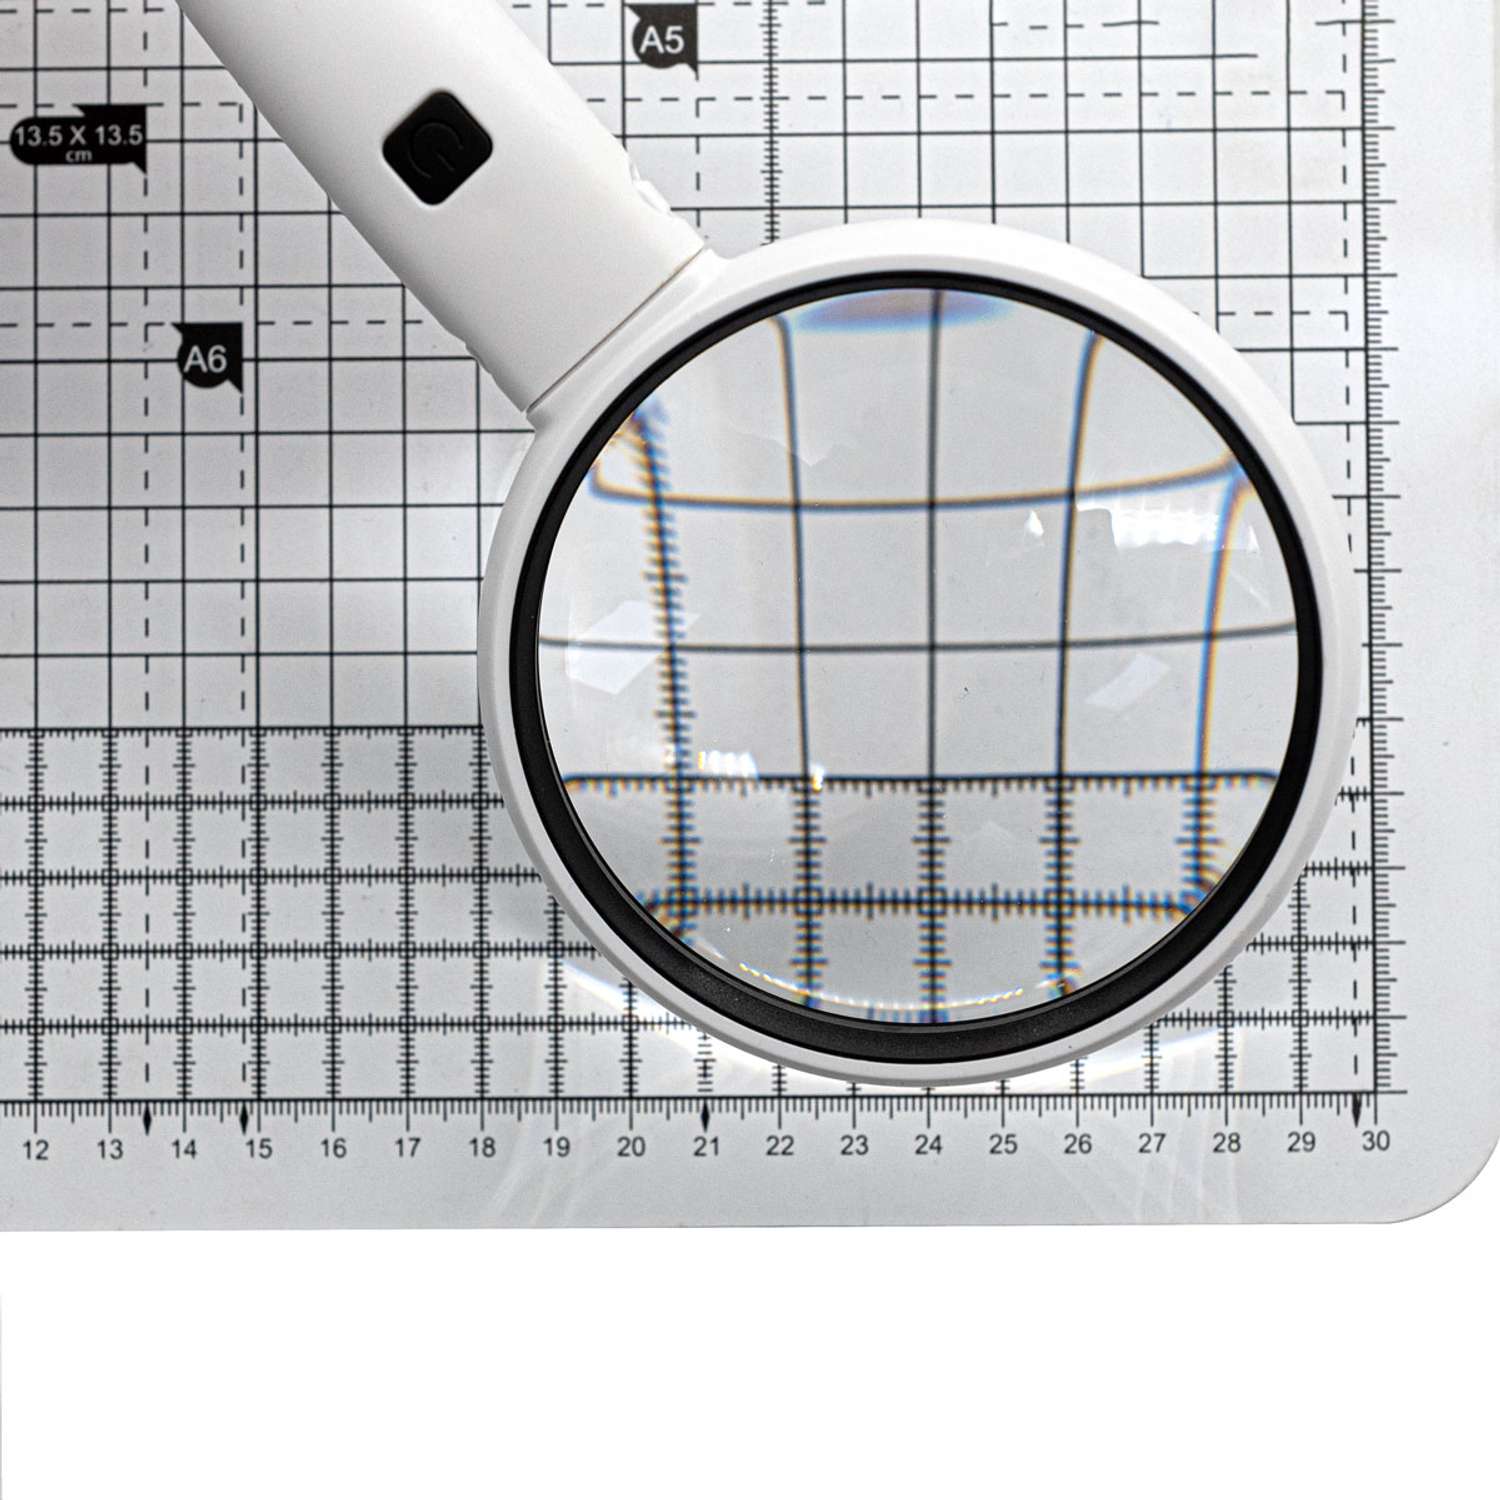 Лупа Айрис увеличительная ручная с подсветкой для рукоделия чтения вышивания увеличение х 3.5 90 мм - фото 2